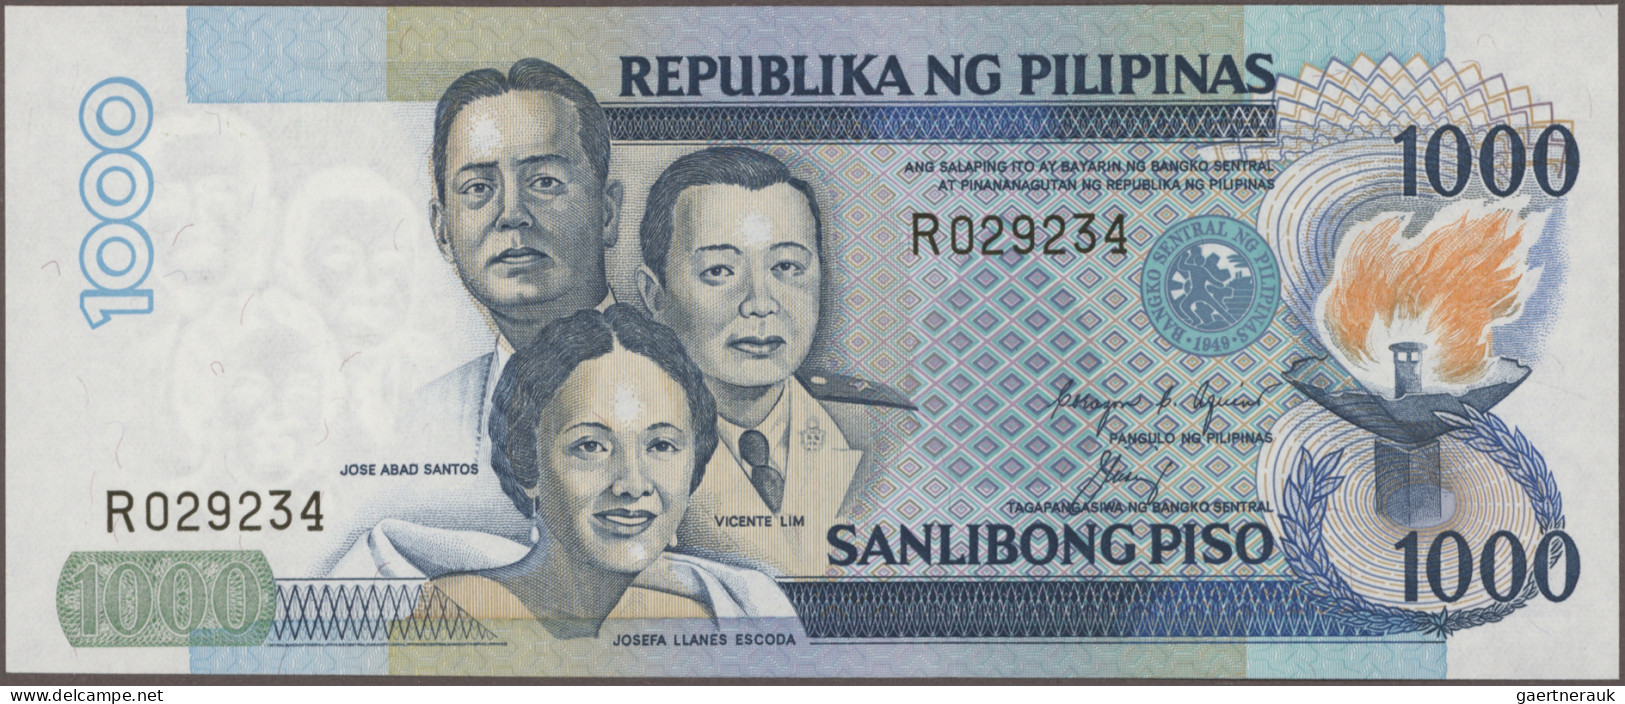 Philippines: Bangko Sentral Republika ng Pilipinas, giant lot with 117 banknotes